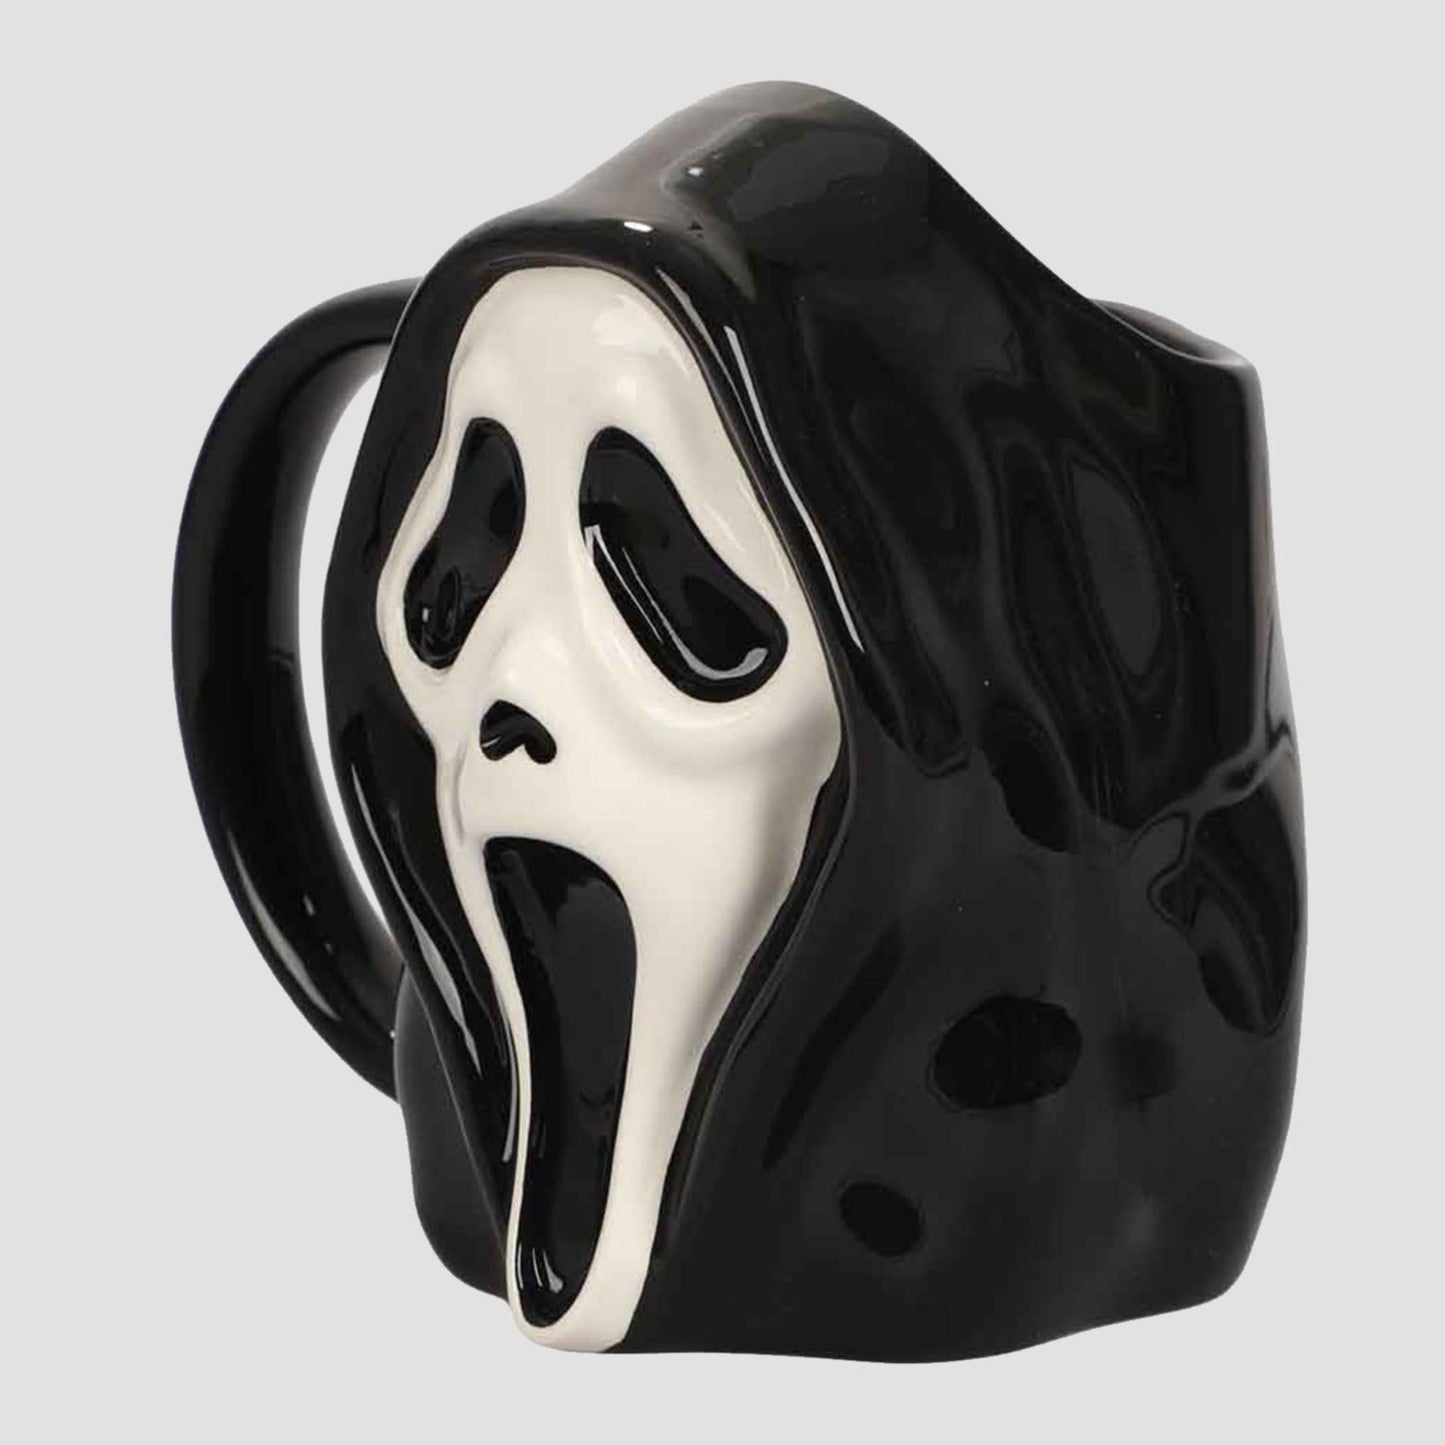 GhostFace (Scream) Sculpted 17 oz. Ceramic Mug